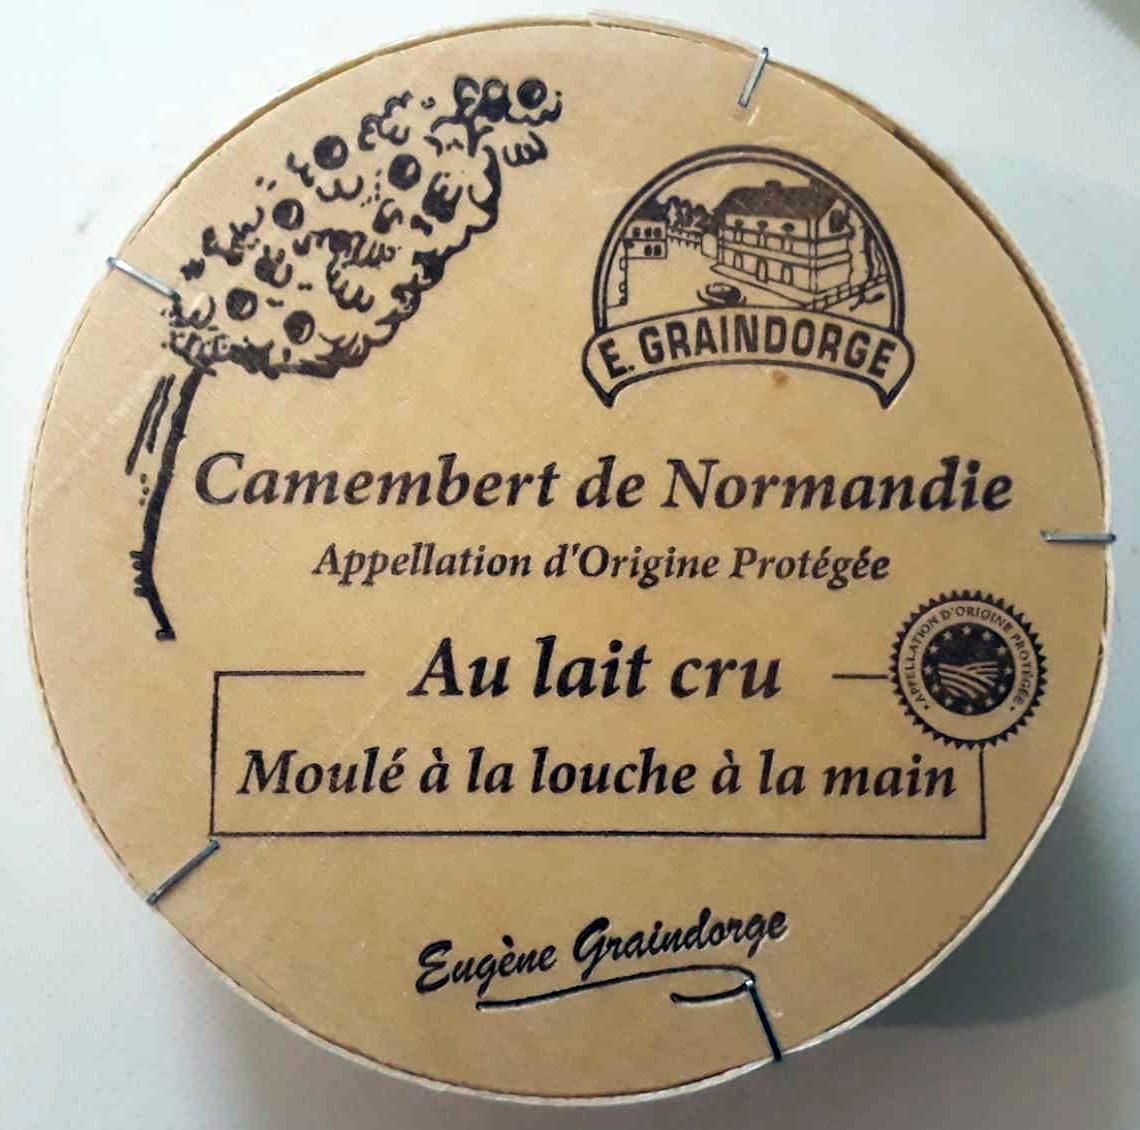 Camembert de Normandie au lait cru (23% MG) - Product - fr